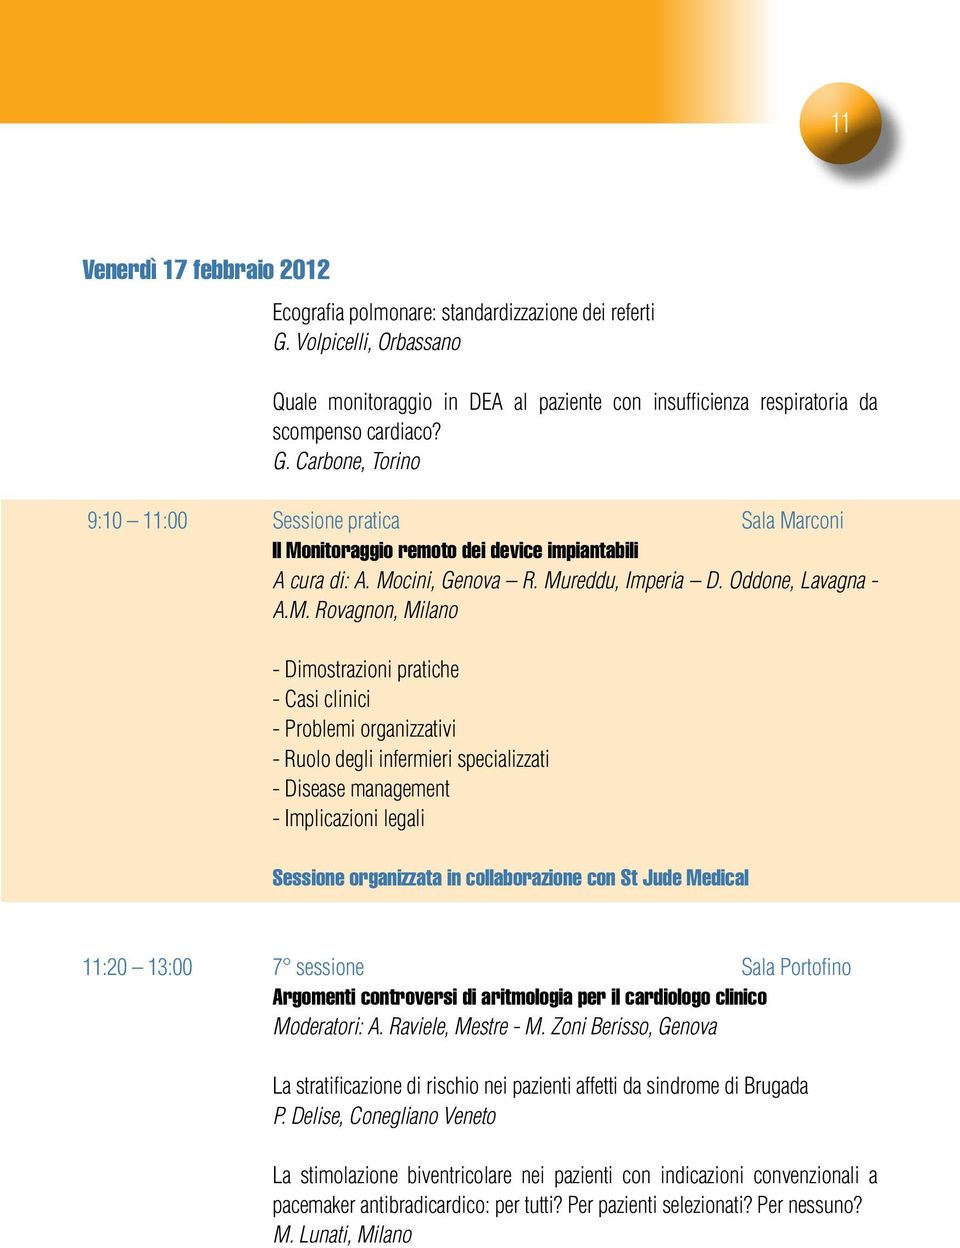 management - Implicazioni legali Sessione organizzata in collaborazione con St Jude Medical 11:20 13:00 7 sessione Sala Portofino Argomenti controversi di aritmologia per il cardiologo clinico